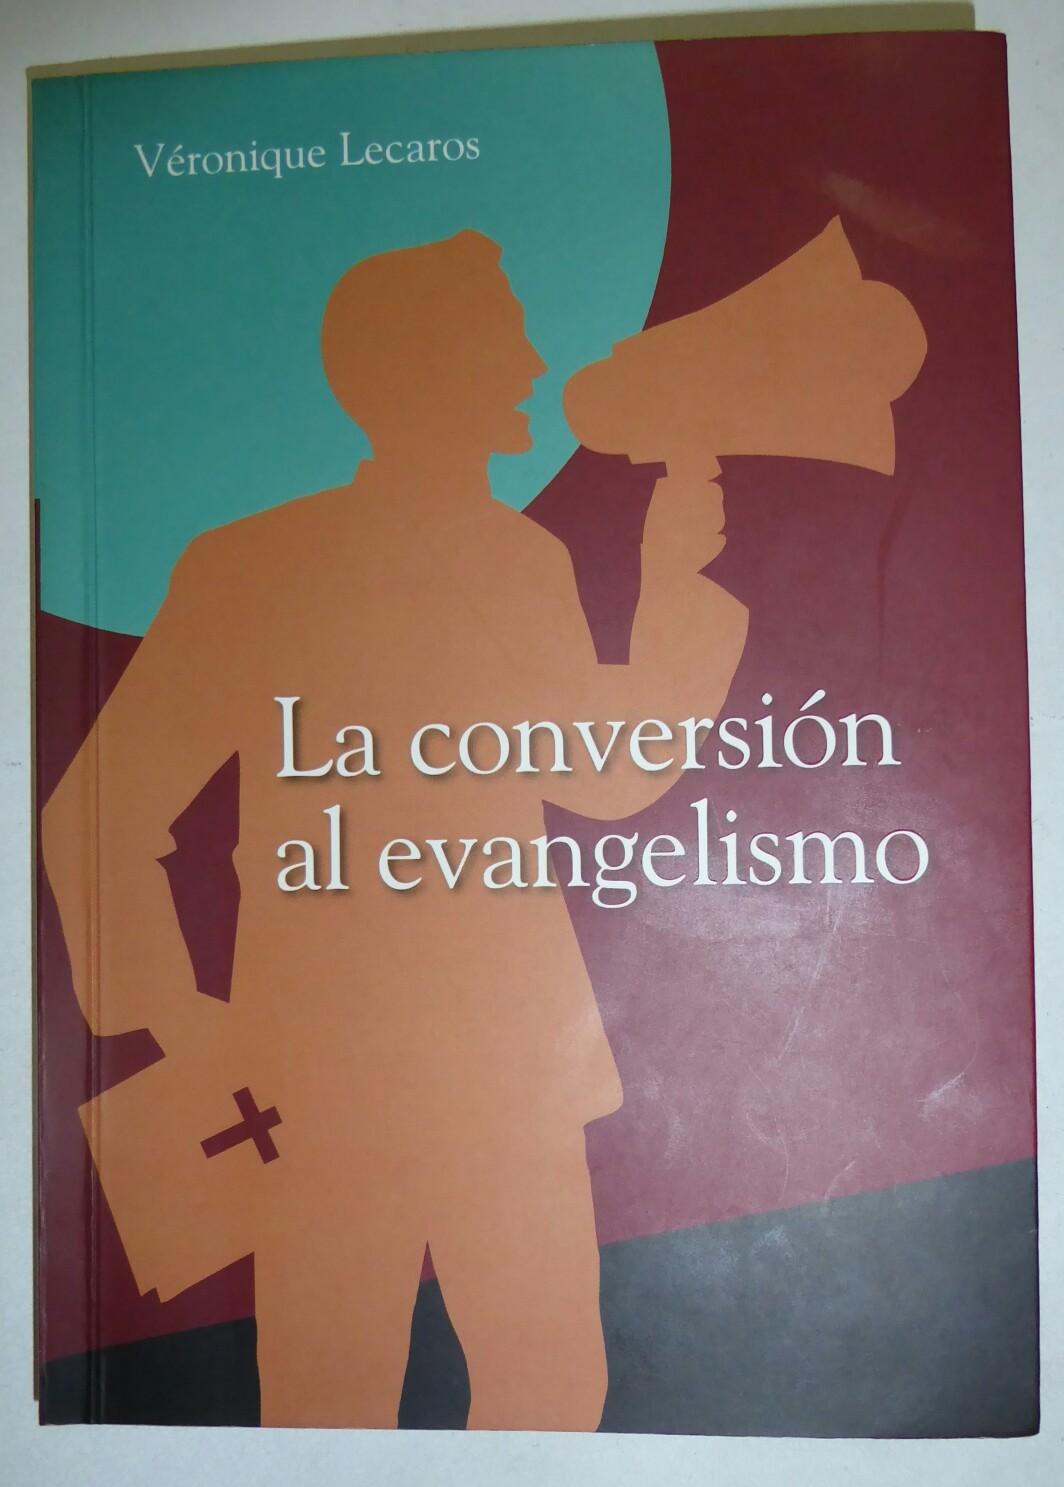 “La conversión al evangelismo” por Veronique Lecaros*